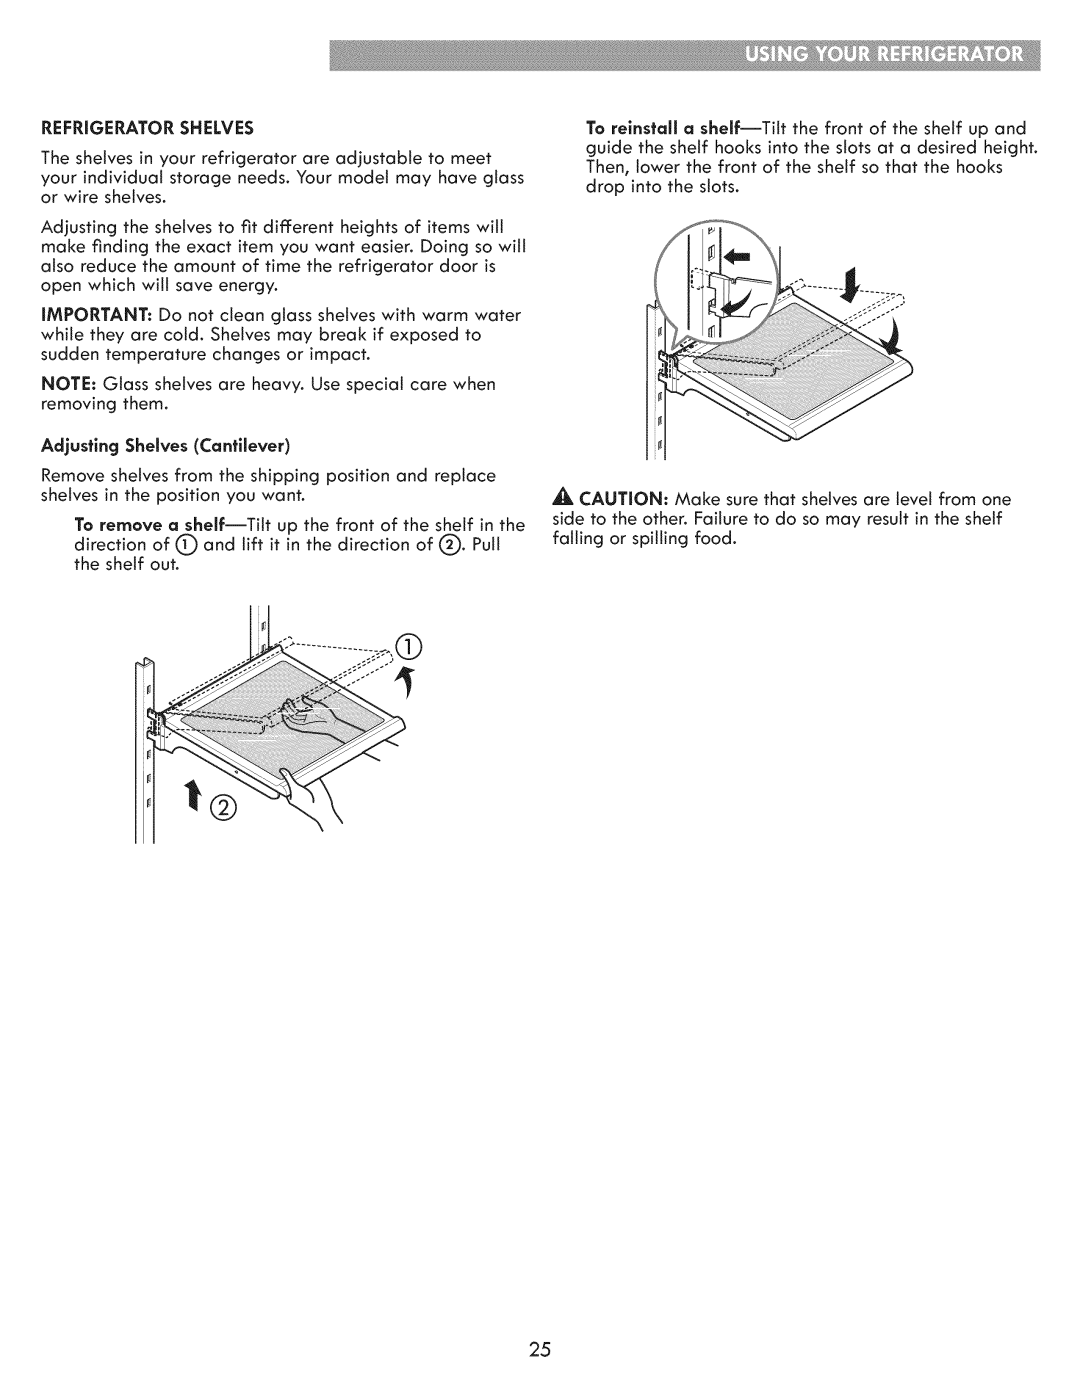 Kenmore 795.7202 manual Adjusting Shelves Cantilever 